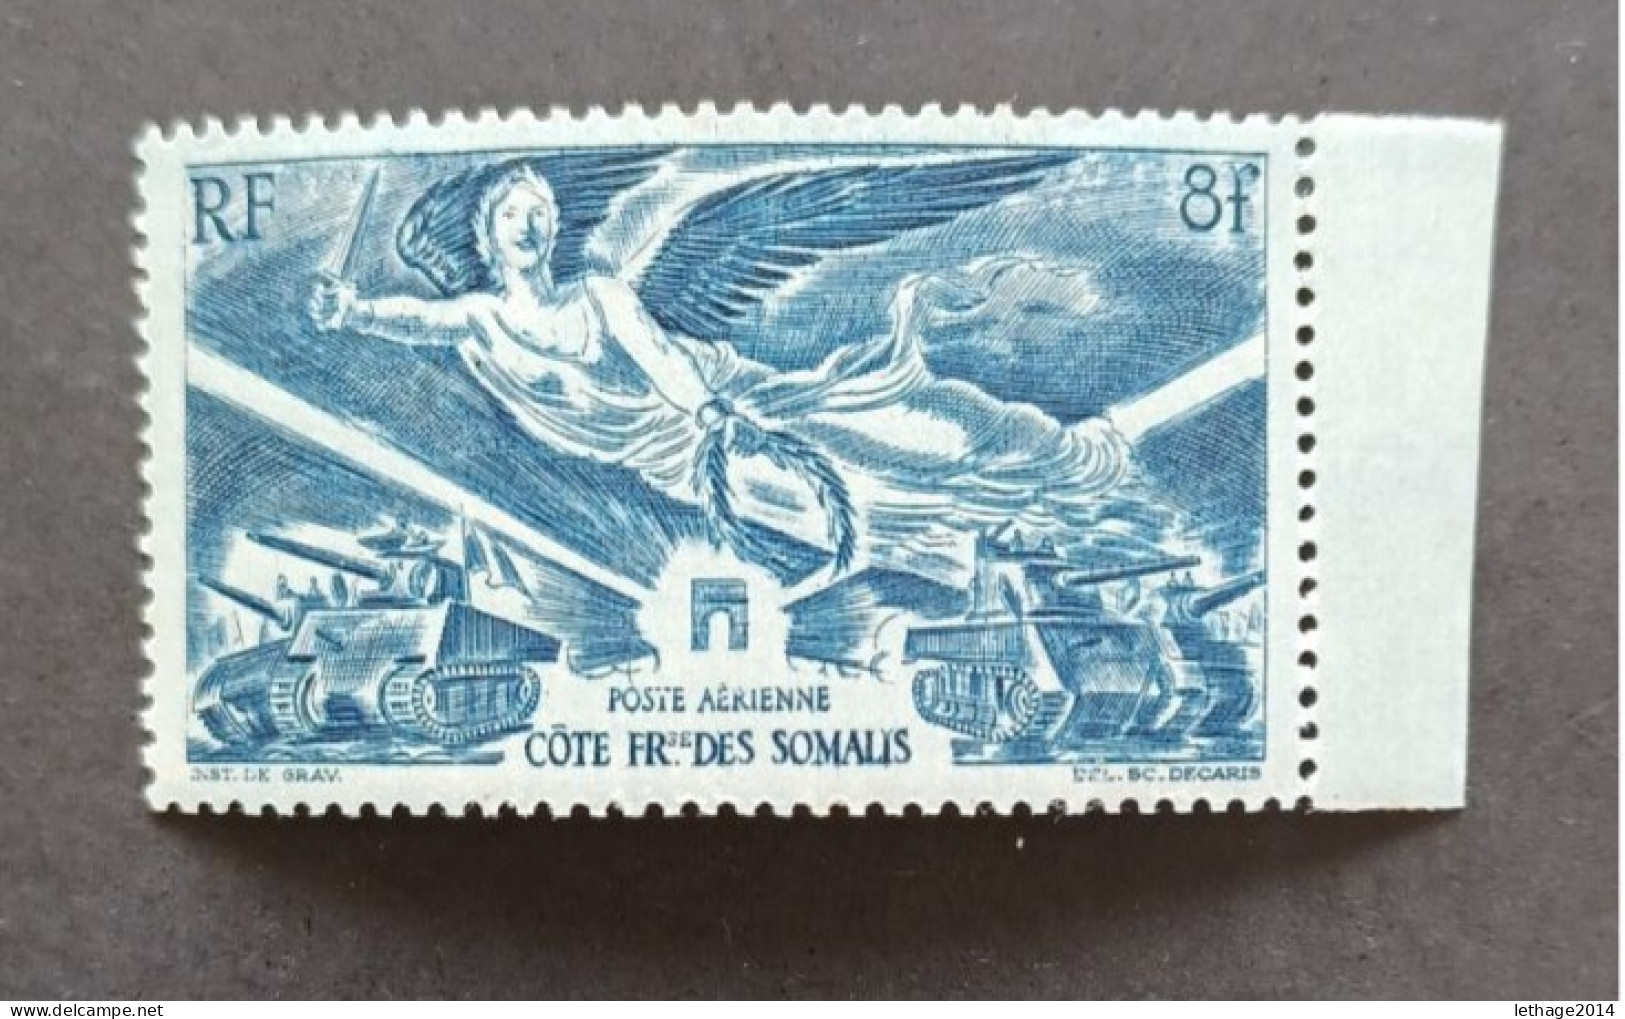 FRANCE COLONIE 1946 ANNIVERSAIRE DE LA VICTOIRE TYPES TIMBRES AERIENS COTE DES SOMALIS CAT YVERT N. 18 MNH - 1946 Anniversaire De La Victoire